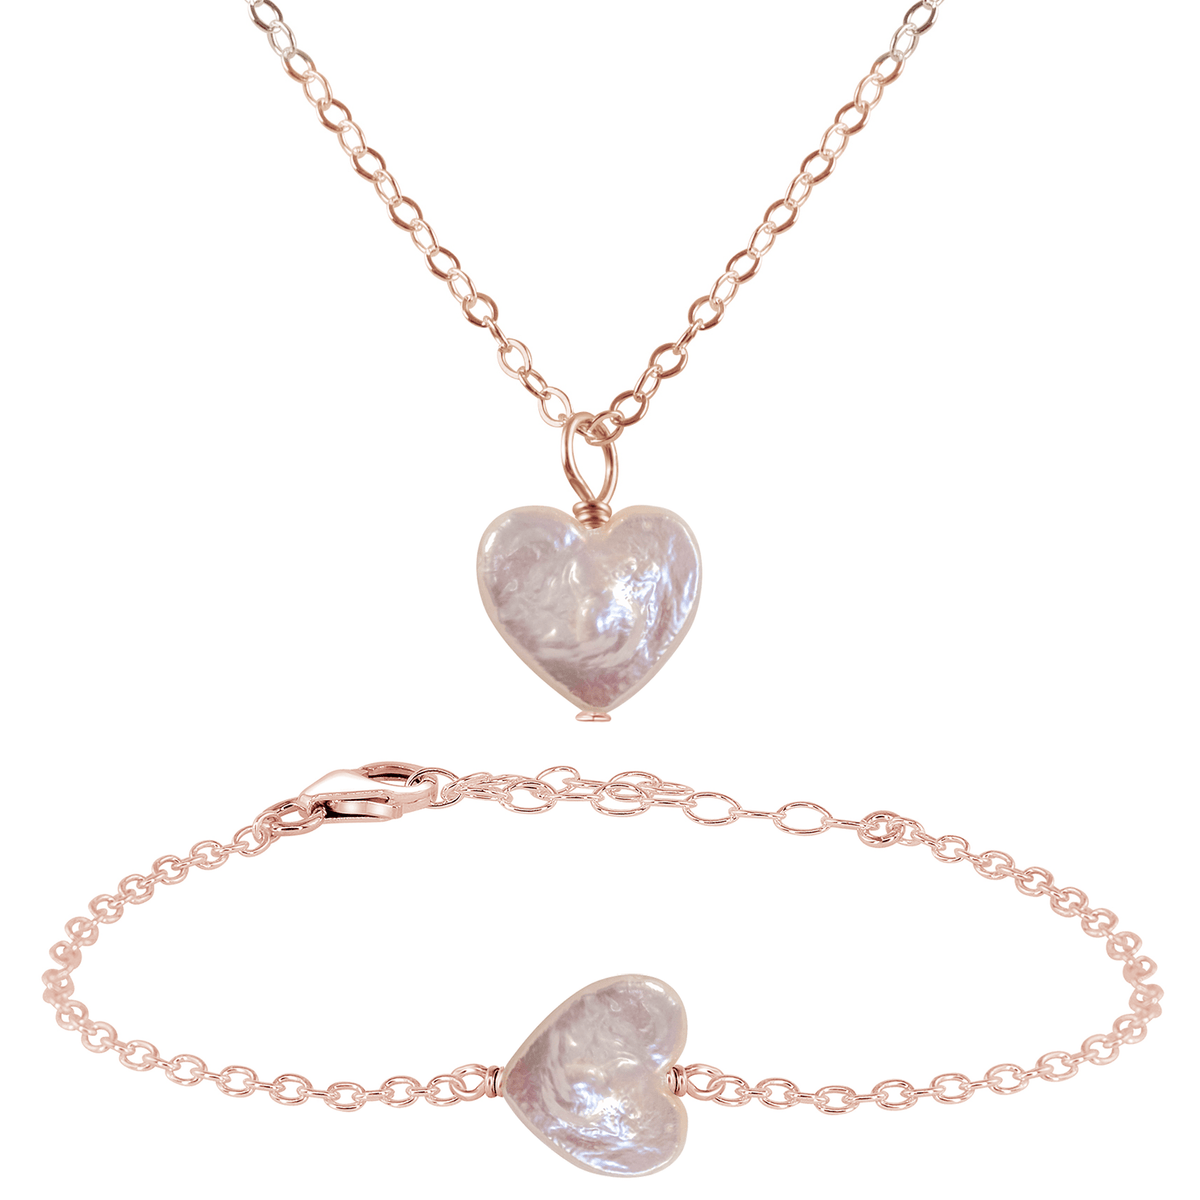 Freshwater Pearl Heart Jewellery Set - Freshwater Pearl Heart Jewellery Set - 14k Rose Gold Fill / Cable / Necklace & Bracelet - Luna Tide Handmade Crystal Jewellery